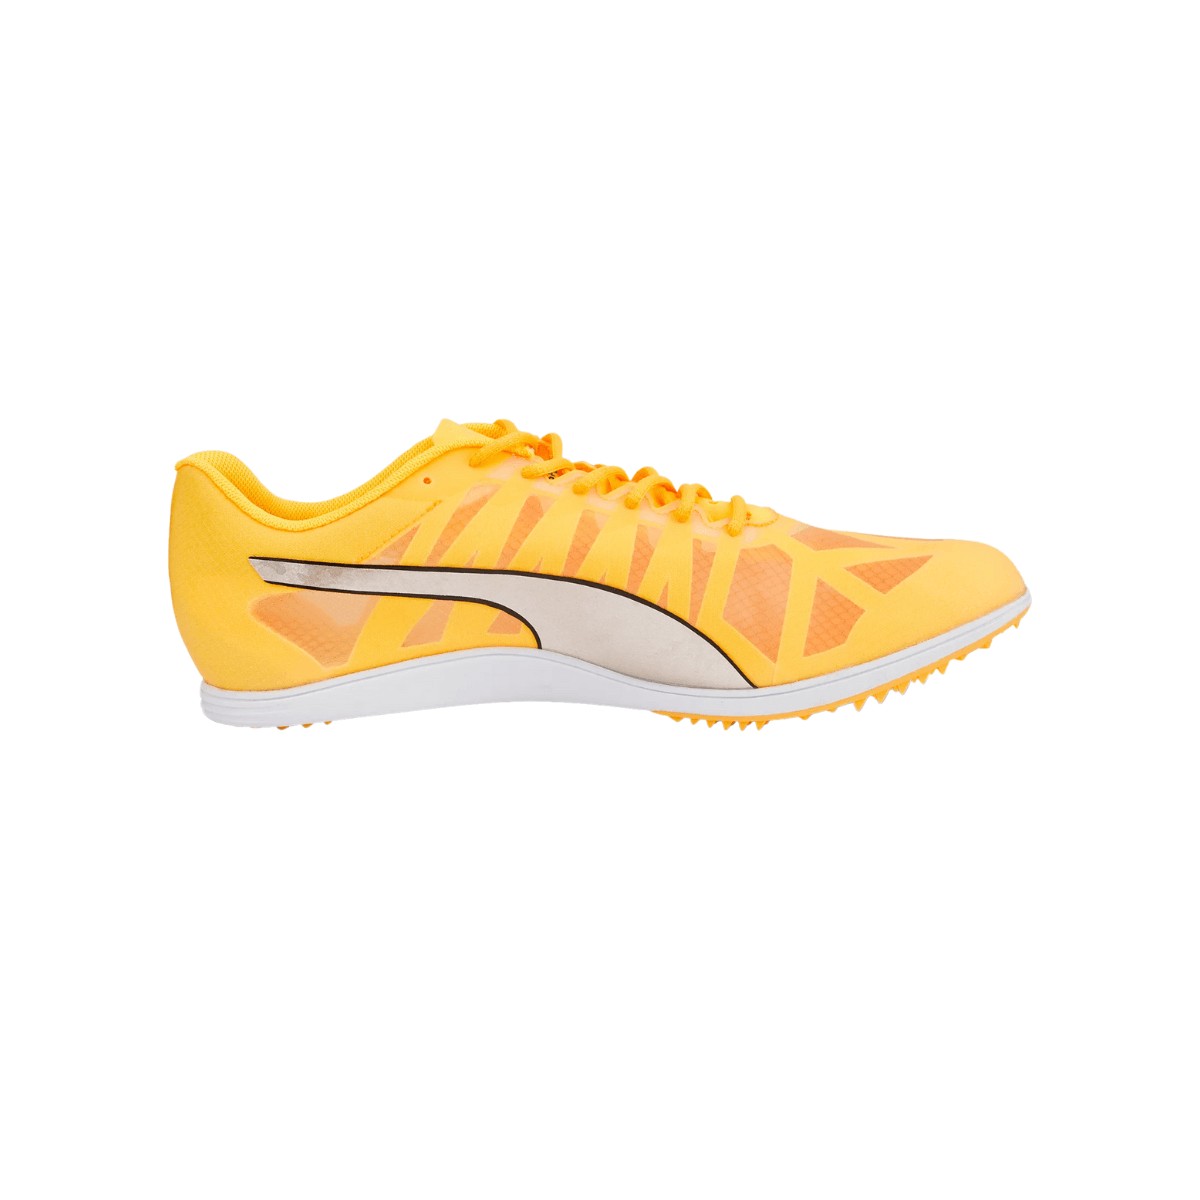 Puma EvoSpeed Distância 10 Yellow AW22 Sapatos, Tamanho 38 - EUR